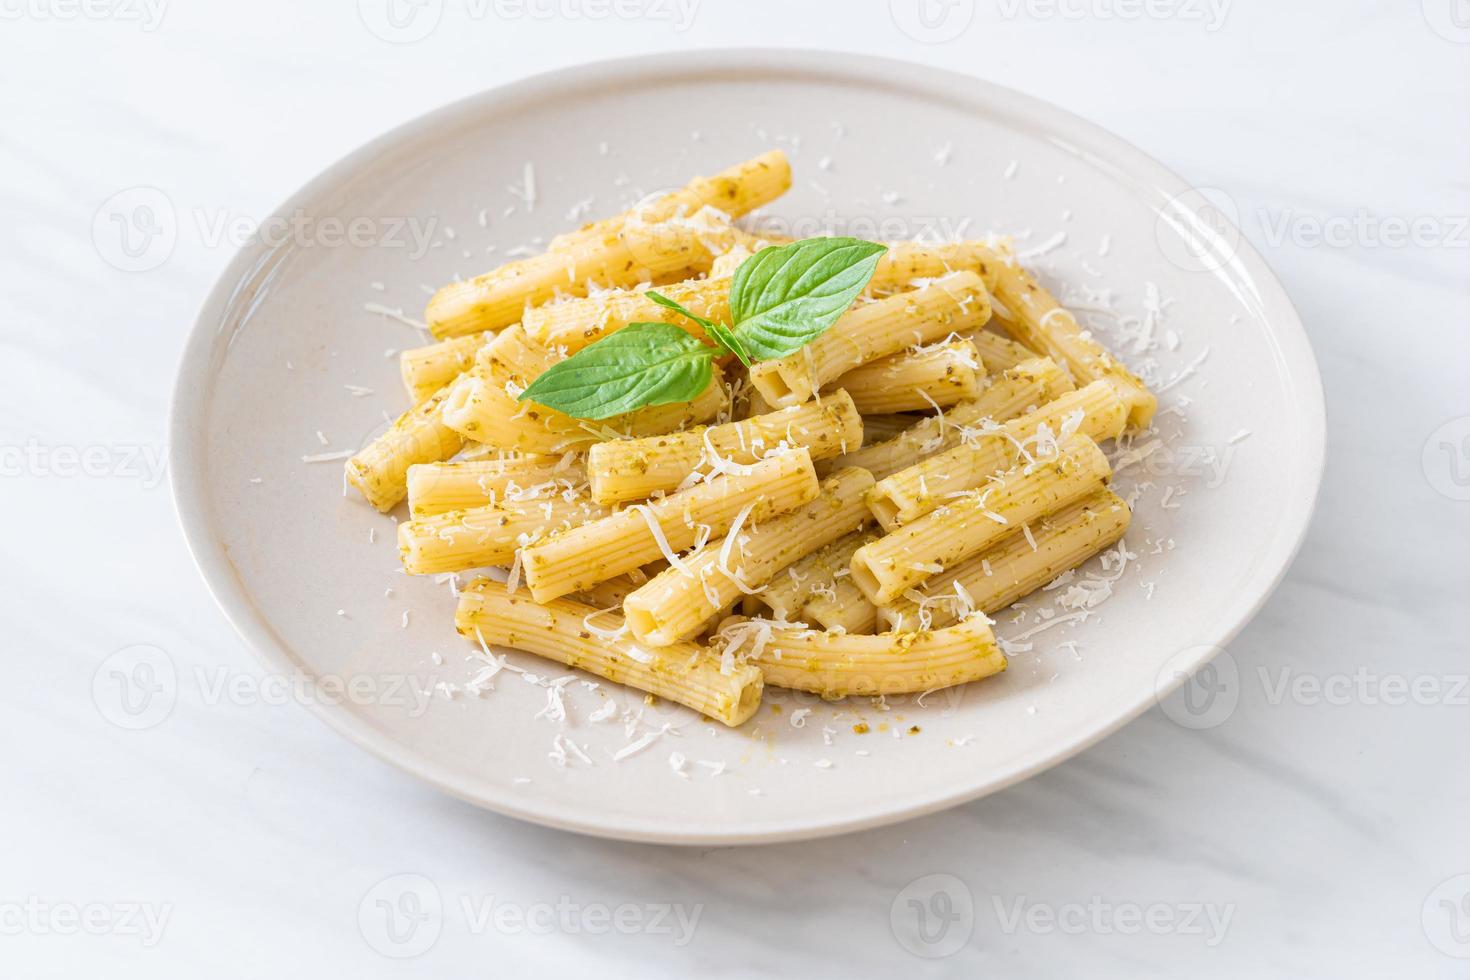 Pâtes au pesto rigatoni au parmesan - cuisine italienne et style de cuisine végétarienne photo